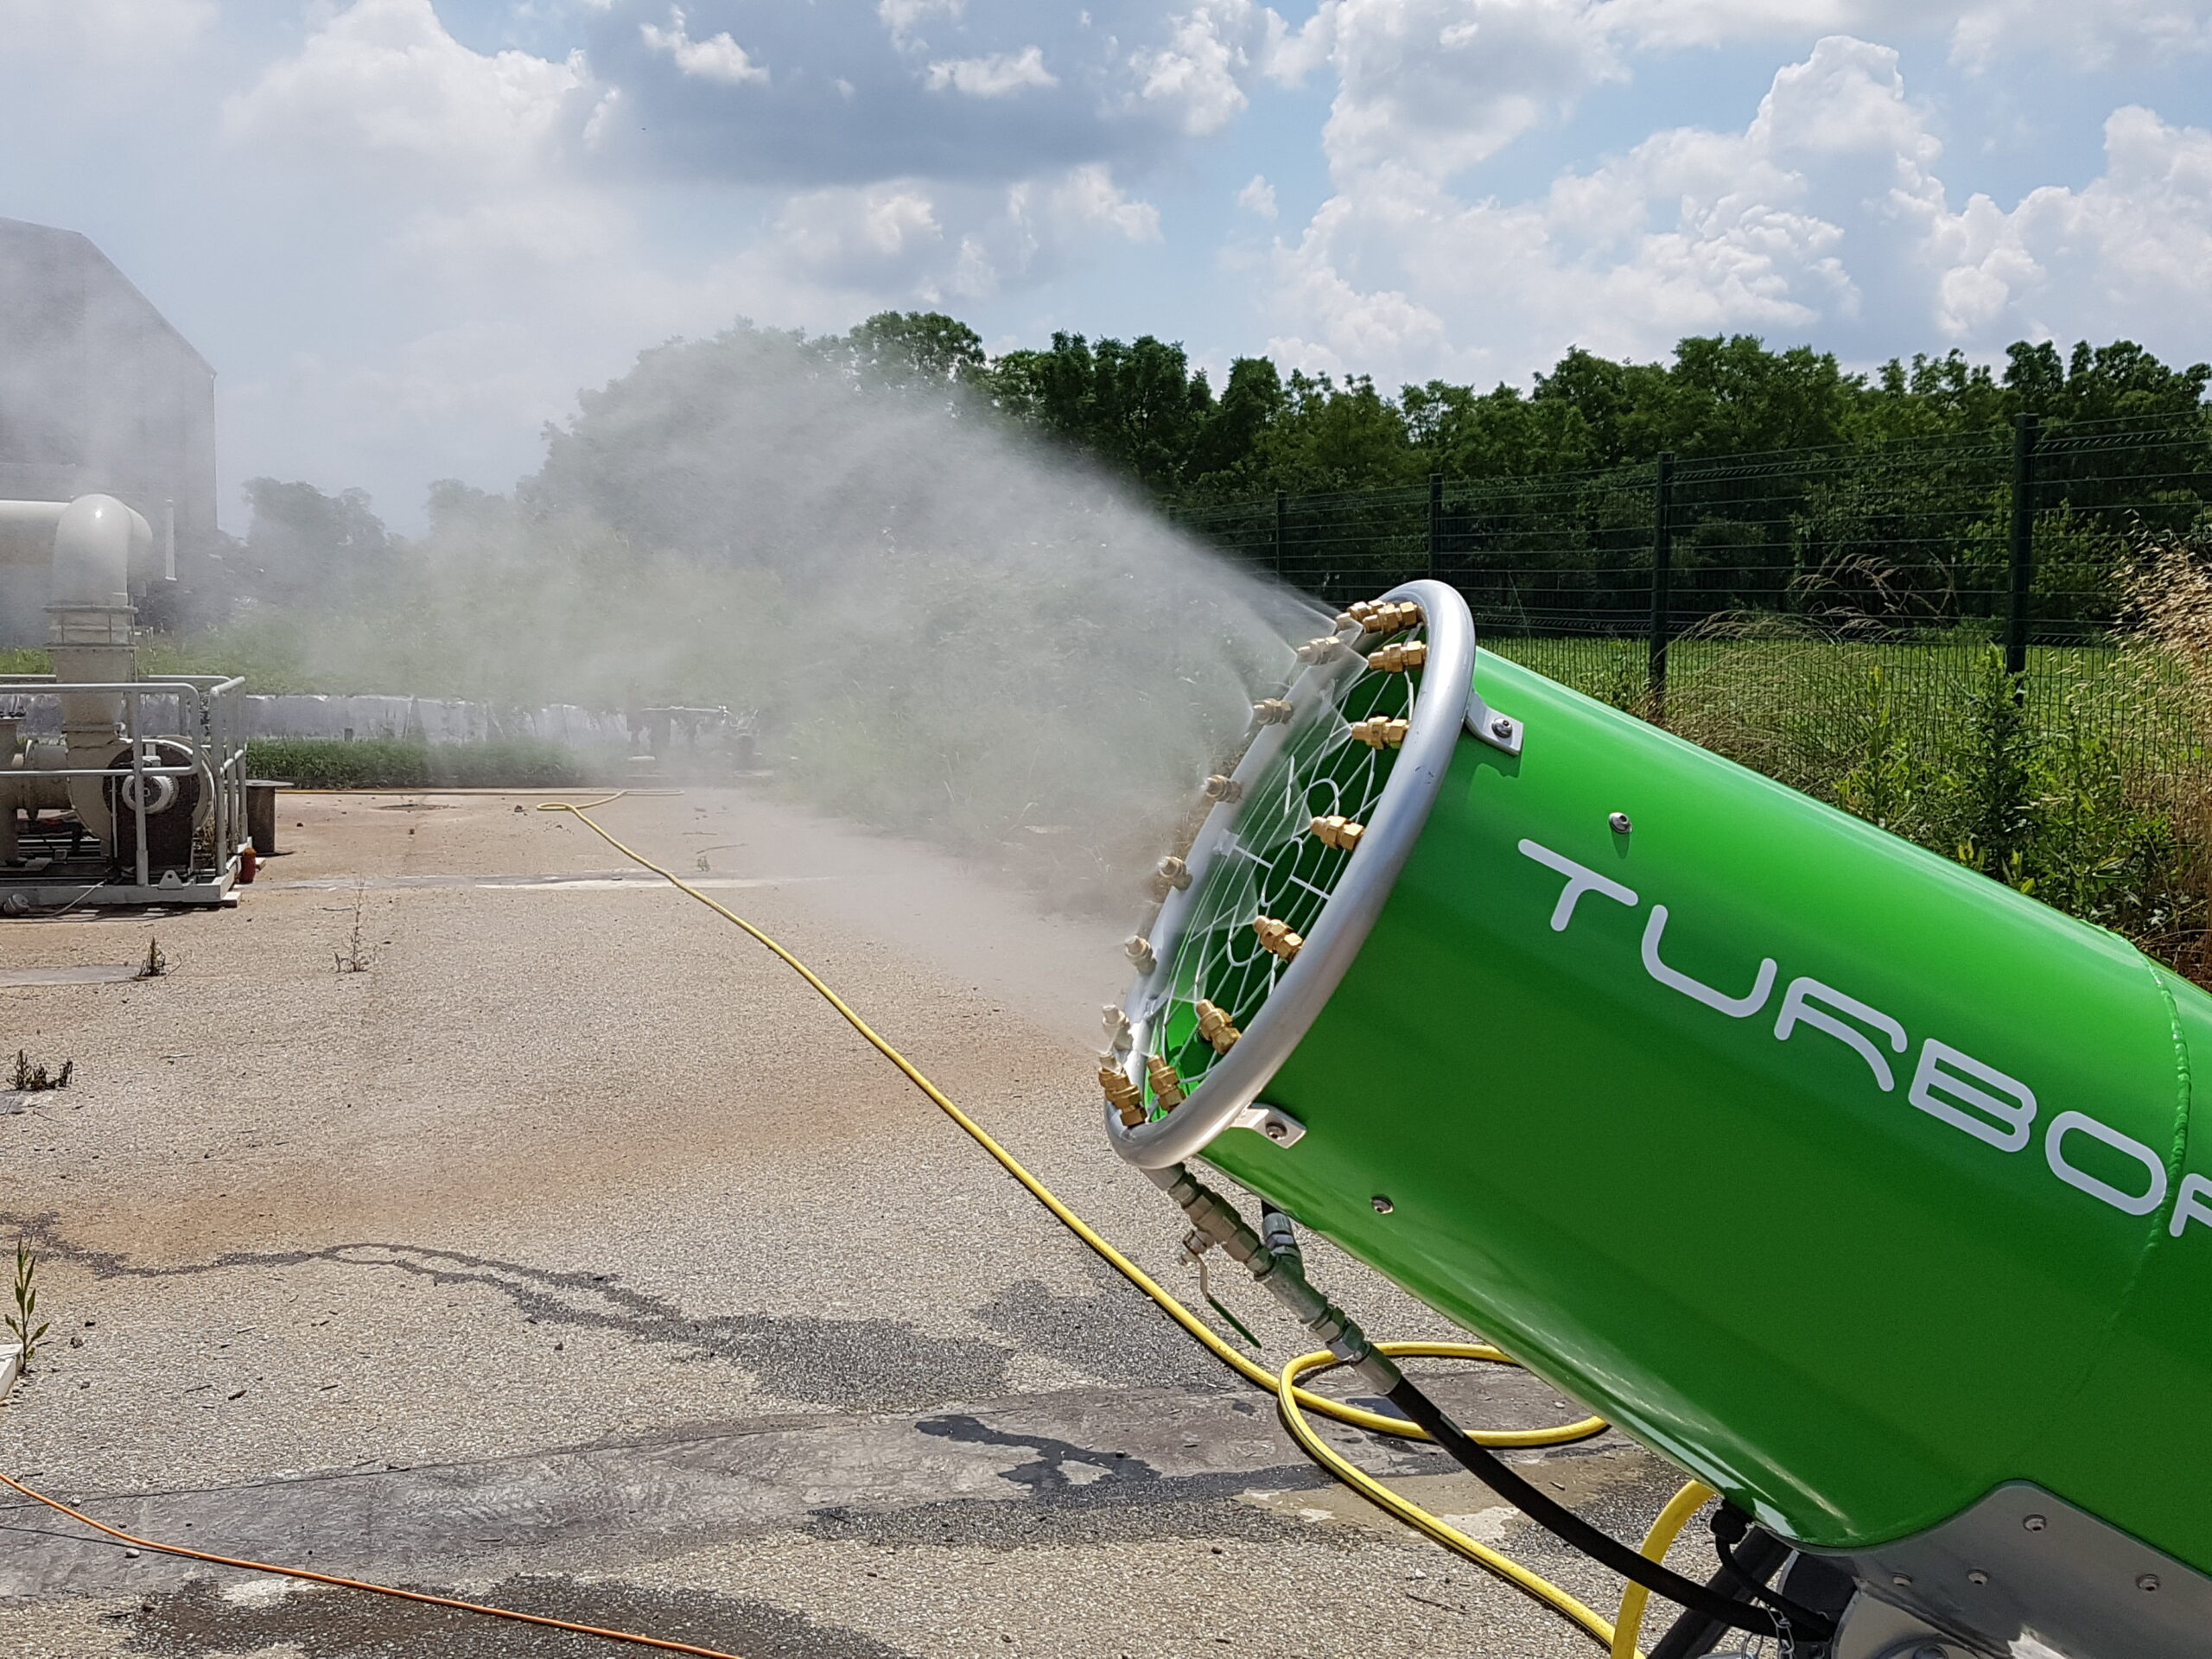 Le TURBORAM TRD35 est un brumisateur de moyenne portée principalement destiné aux travaux de démolition, de dépollution, du BTP, et aux activités de recyclage. Mobile